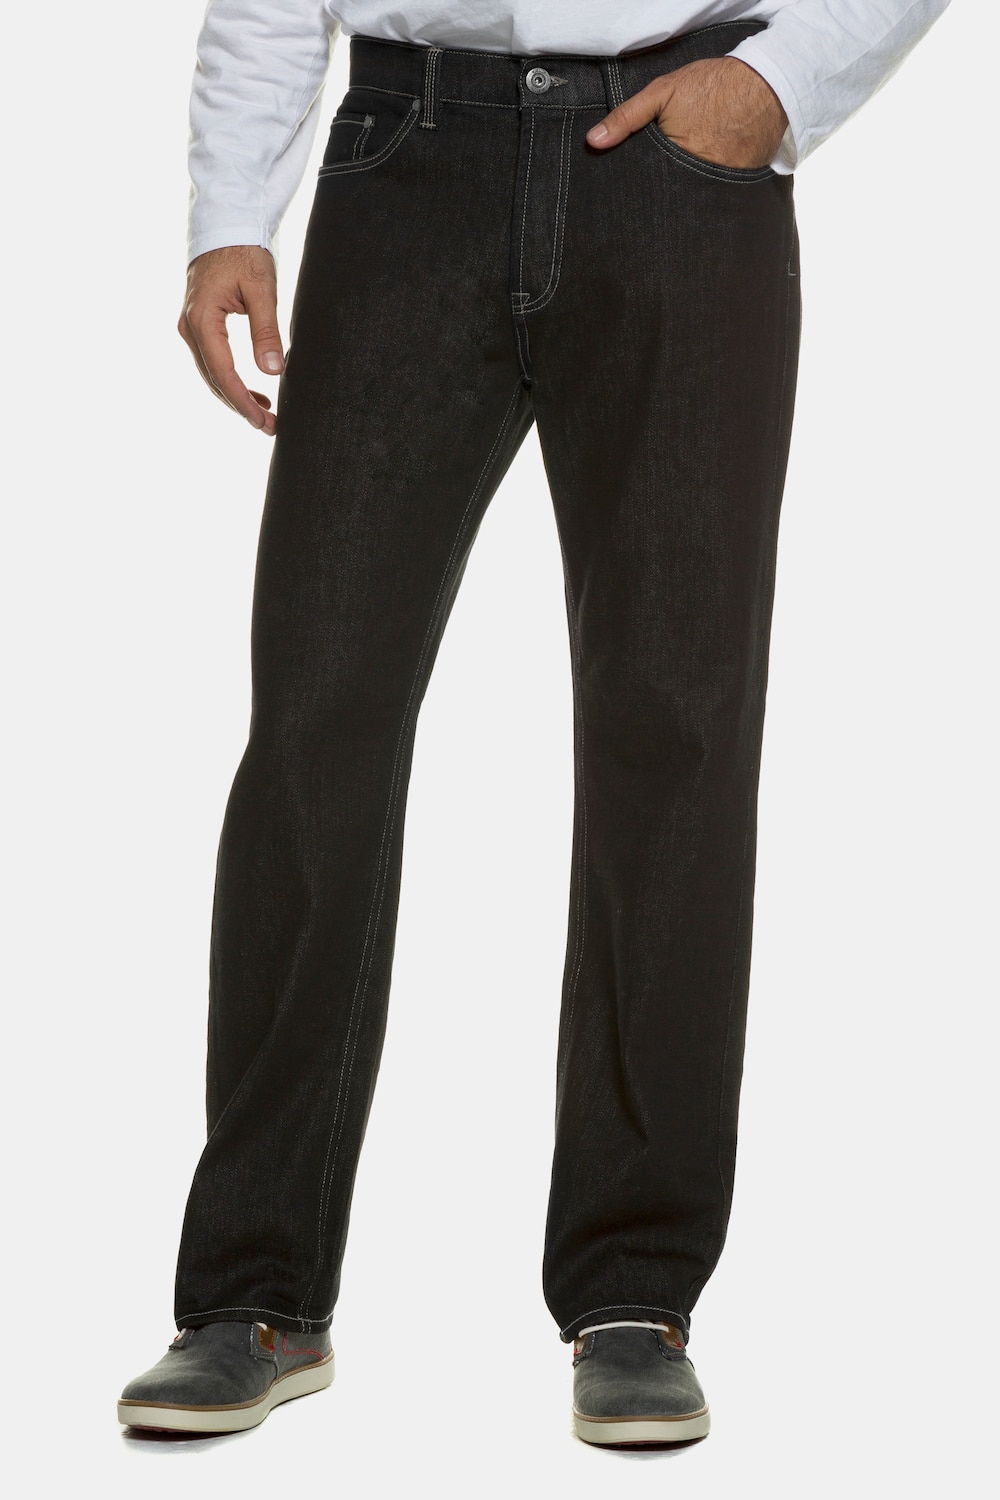 Grote Maten jeans regular fit, Heren, zwart, Maat: 66, Katoen, JP1880